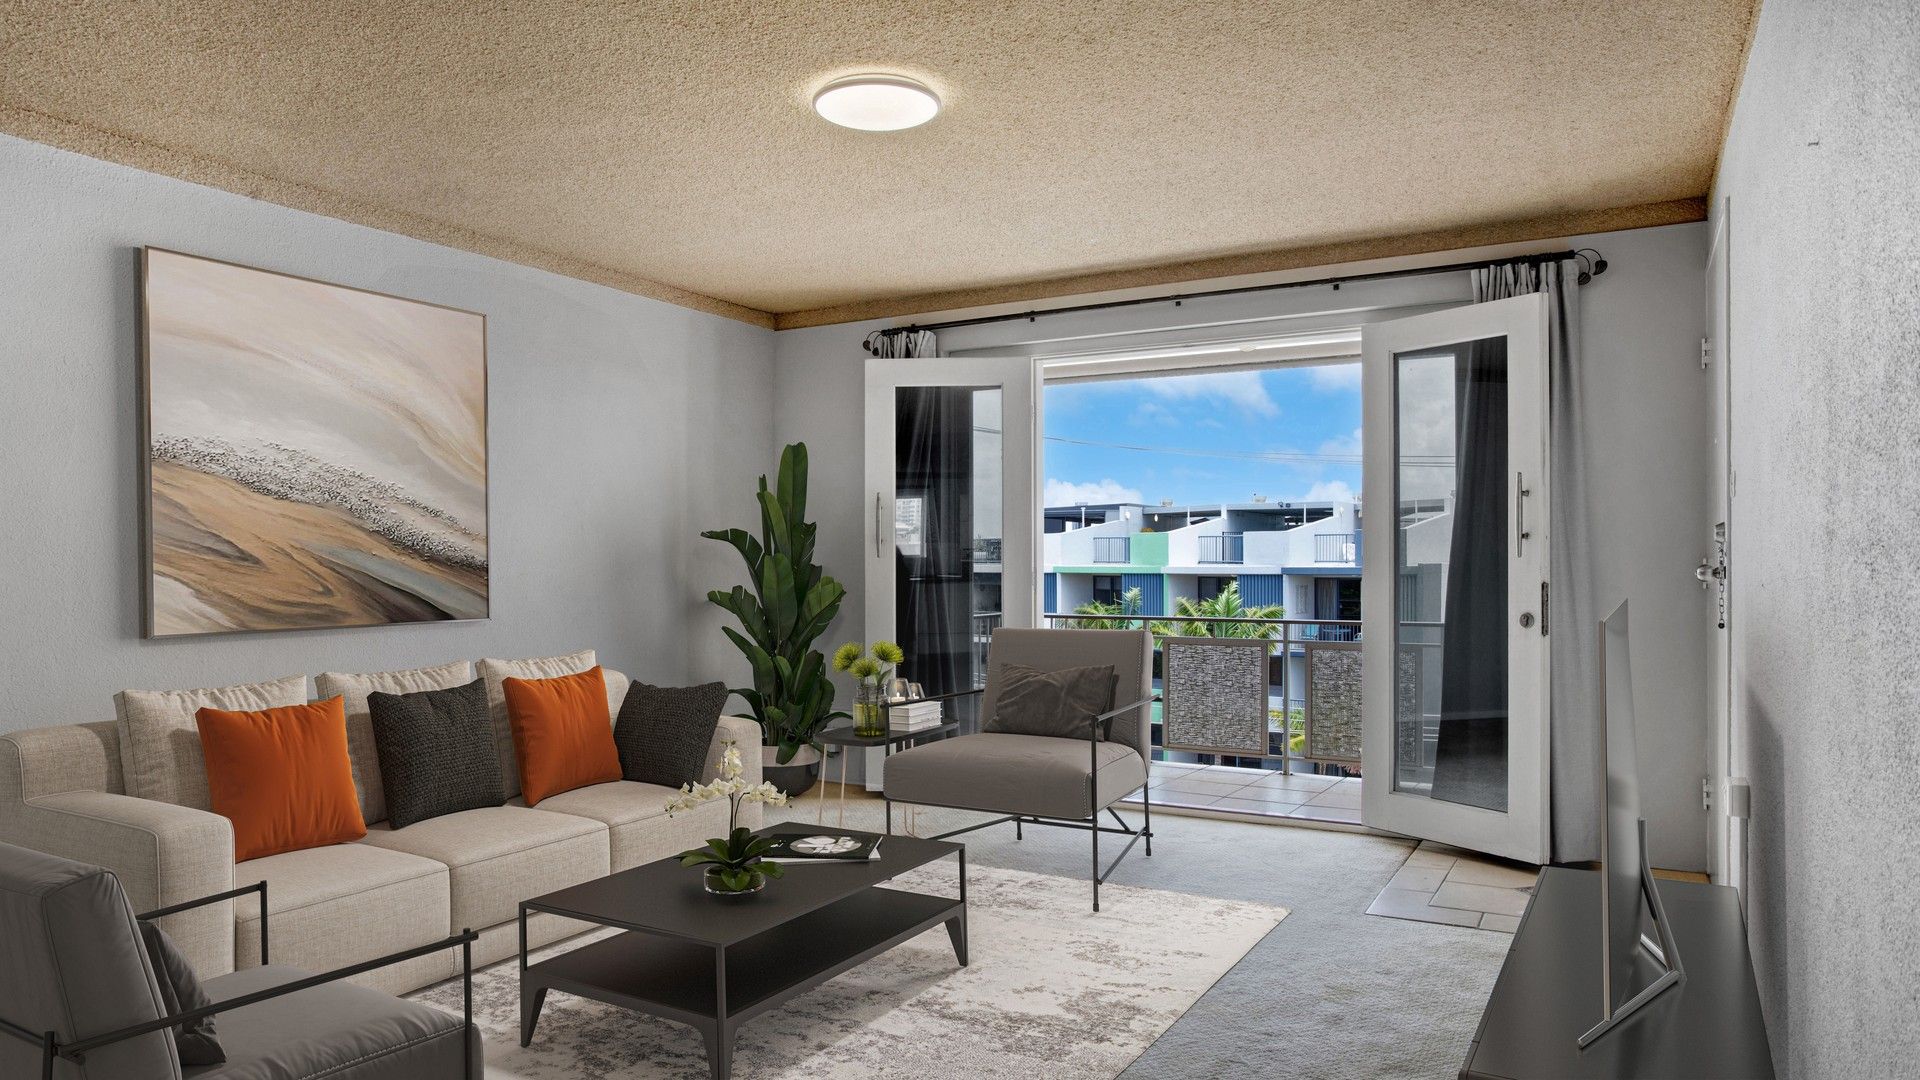 2 bedrooms Apartment / Unit / Flat in 6/13 Otranto Avenue CALOUNDRA QLD, 4551